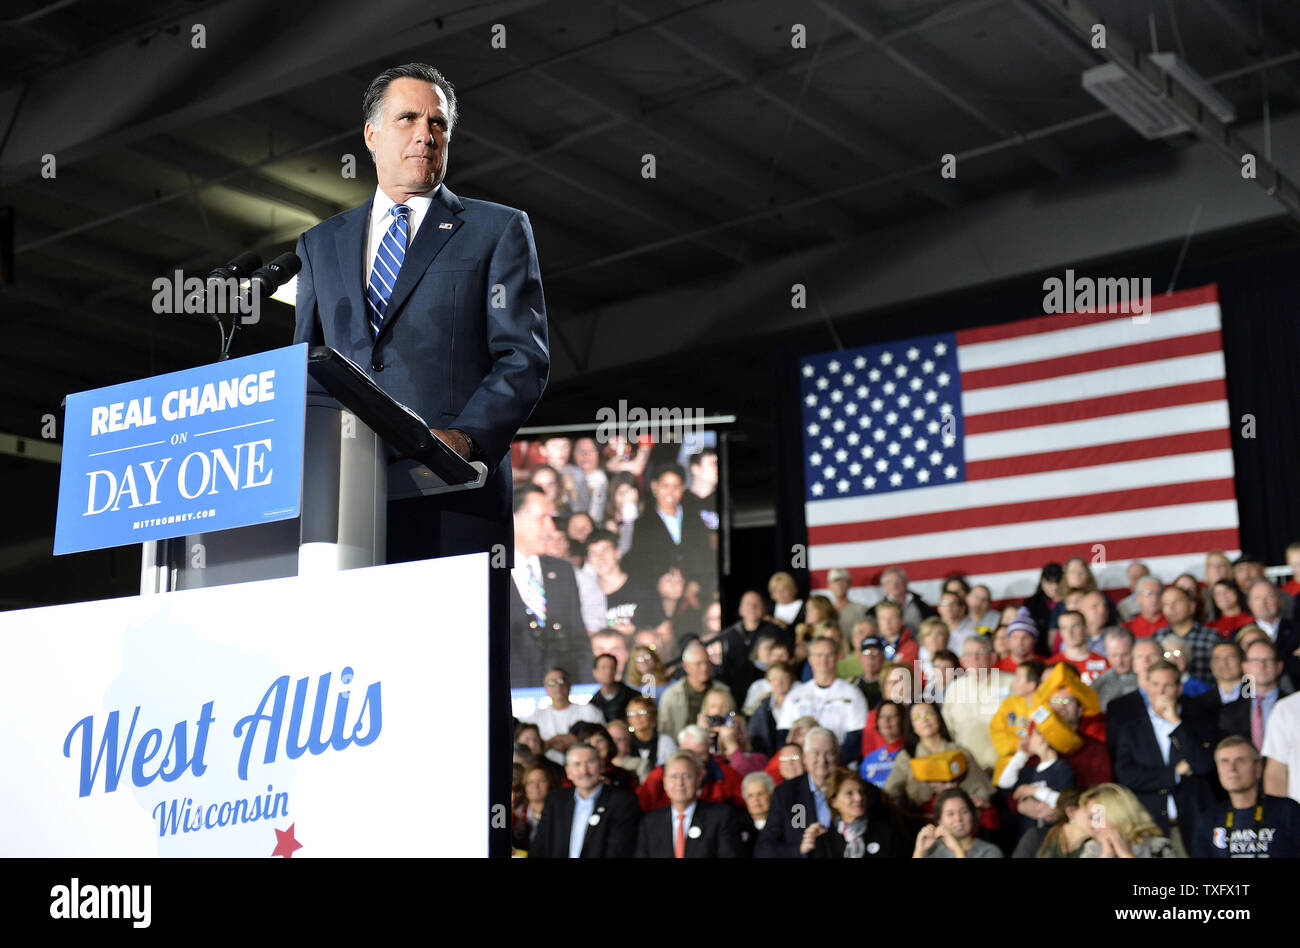 Le candidat républicain Mitt Romney parle aux partisans lors d'un rassemblement au State Fair Park à West Allis, Wisconsin. Romney a exposé les arguments de clôture pour sa candidature à la présidence des États-Unis dans son discours. UPI/Brian Kersey Banque D'Images